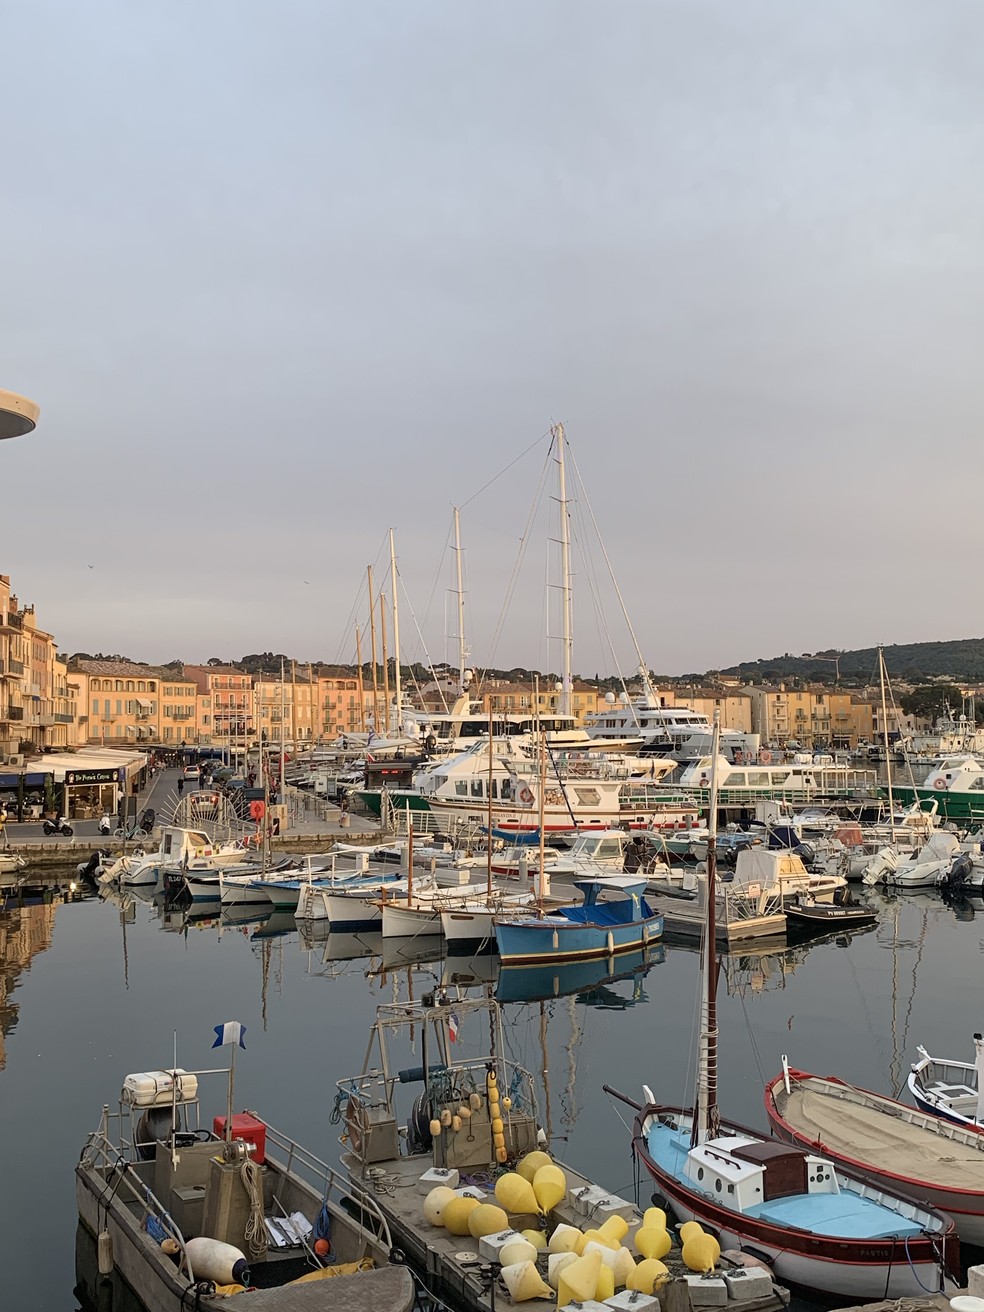 Barcos parados na marina de Saint-Tropez, uma das cidades mais conhecidas e glamourosas da Côte d'Azur — Foto: Fabiana Gabriel